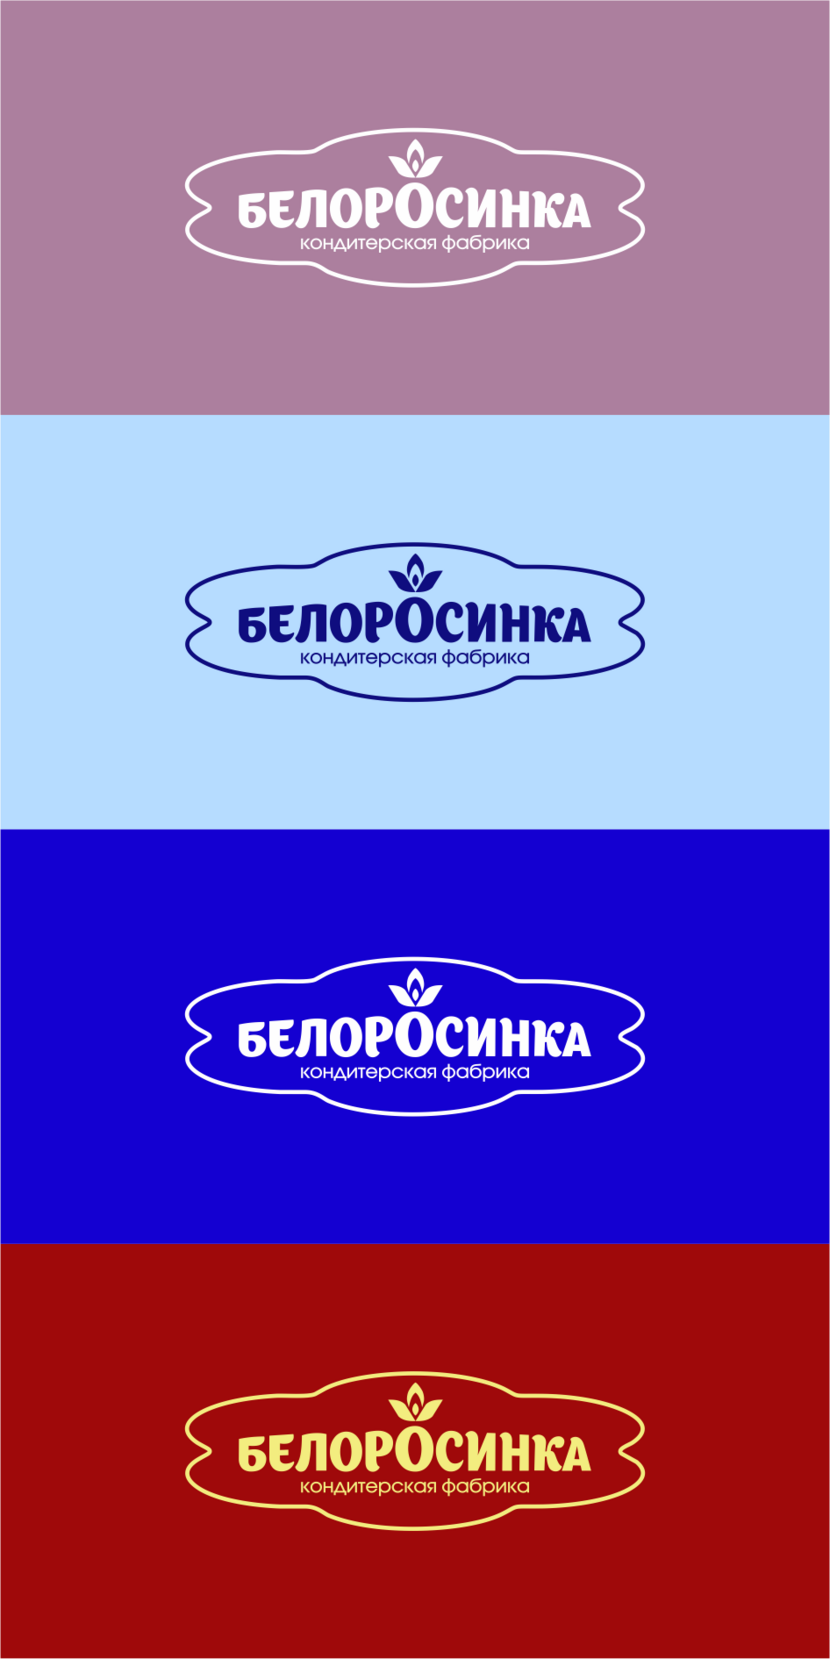 Логотип для кондитерских изделий торговой марки БЕЛОРОСИНКА  -  автор Владимир Братенков